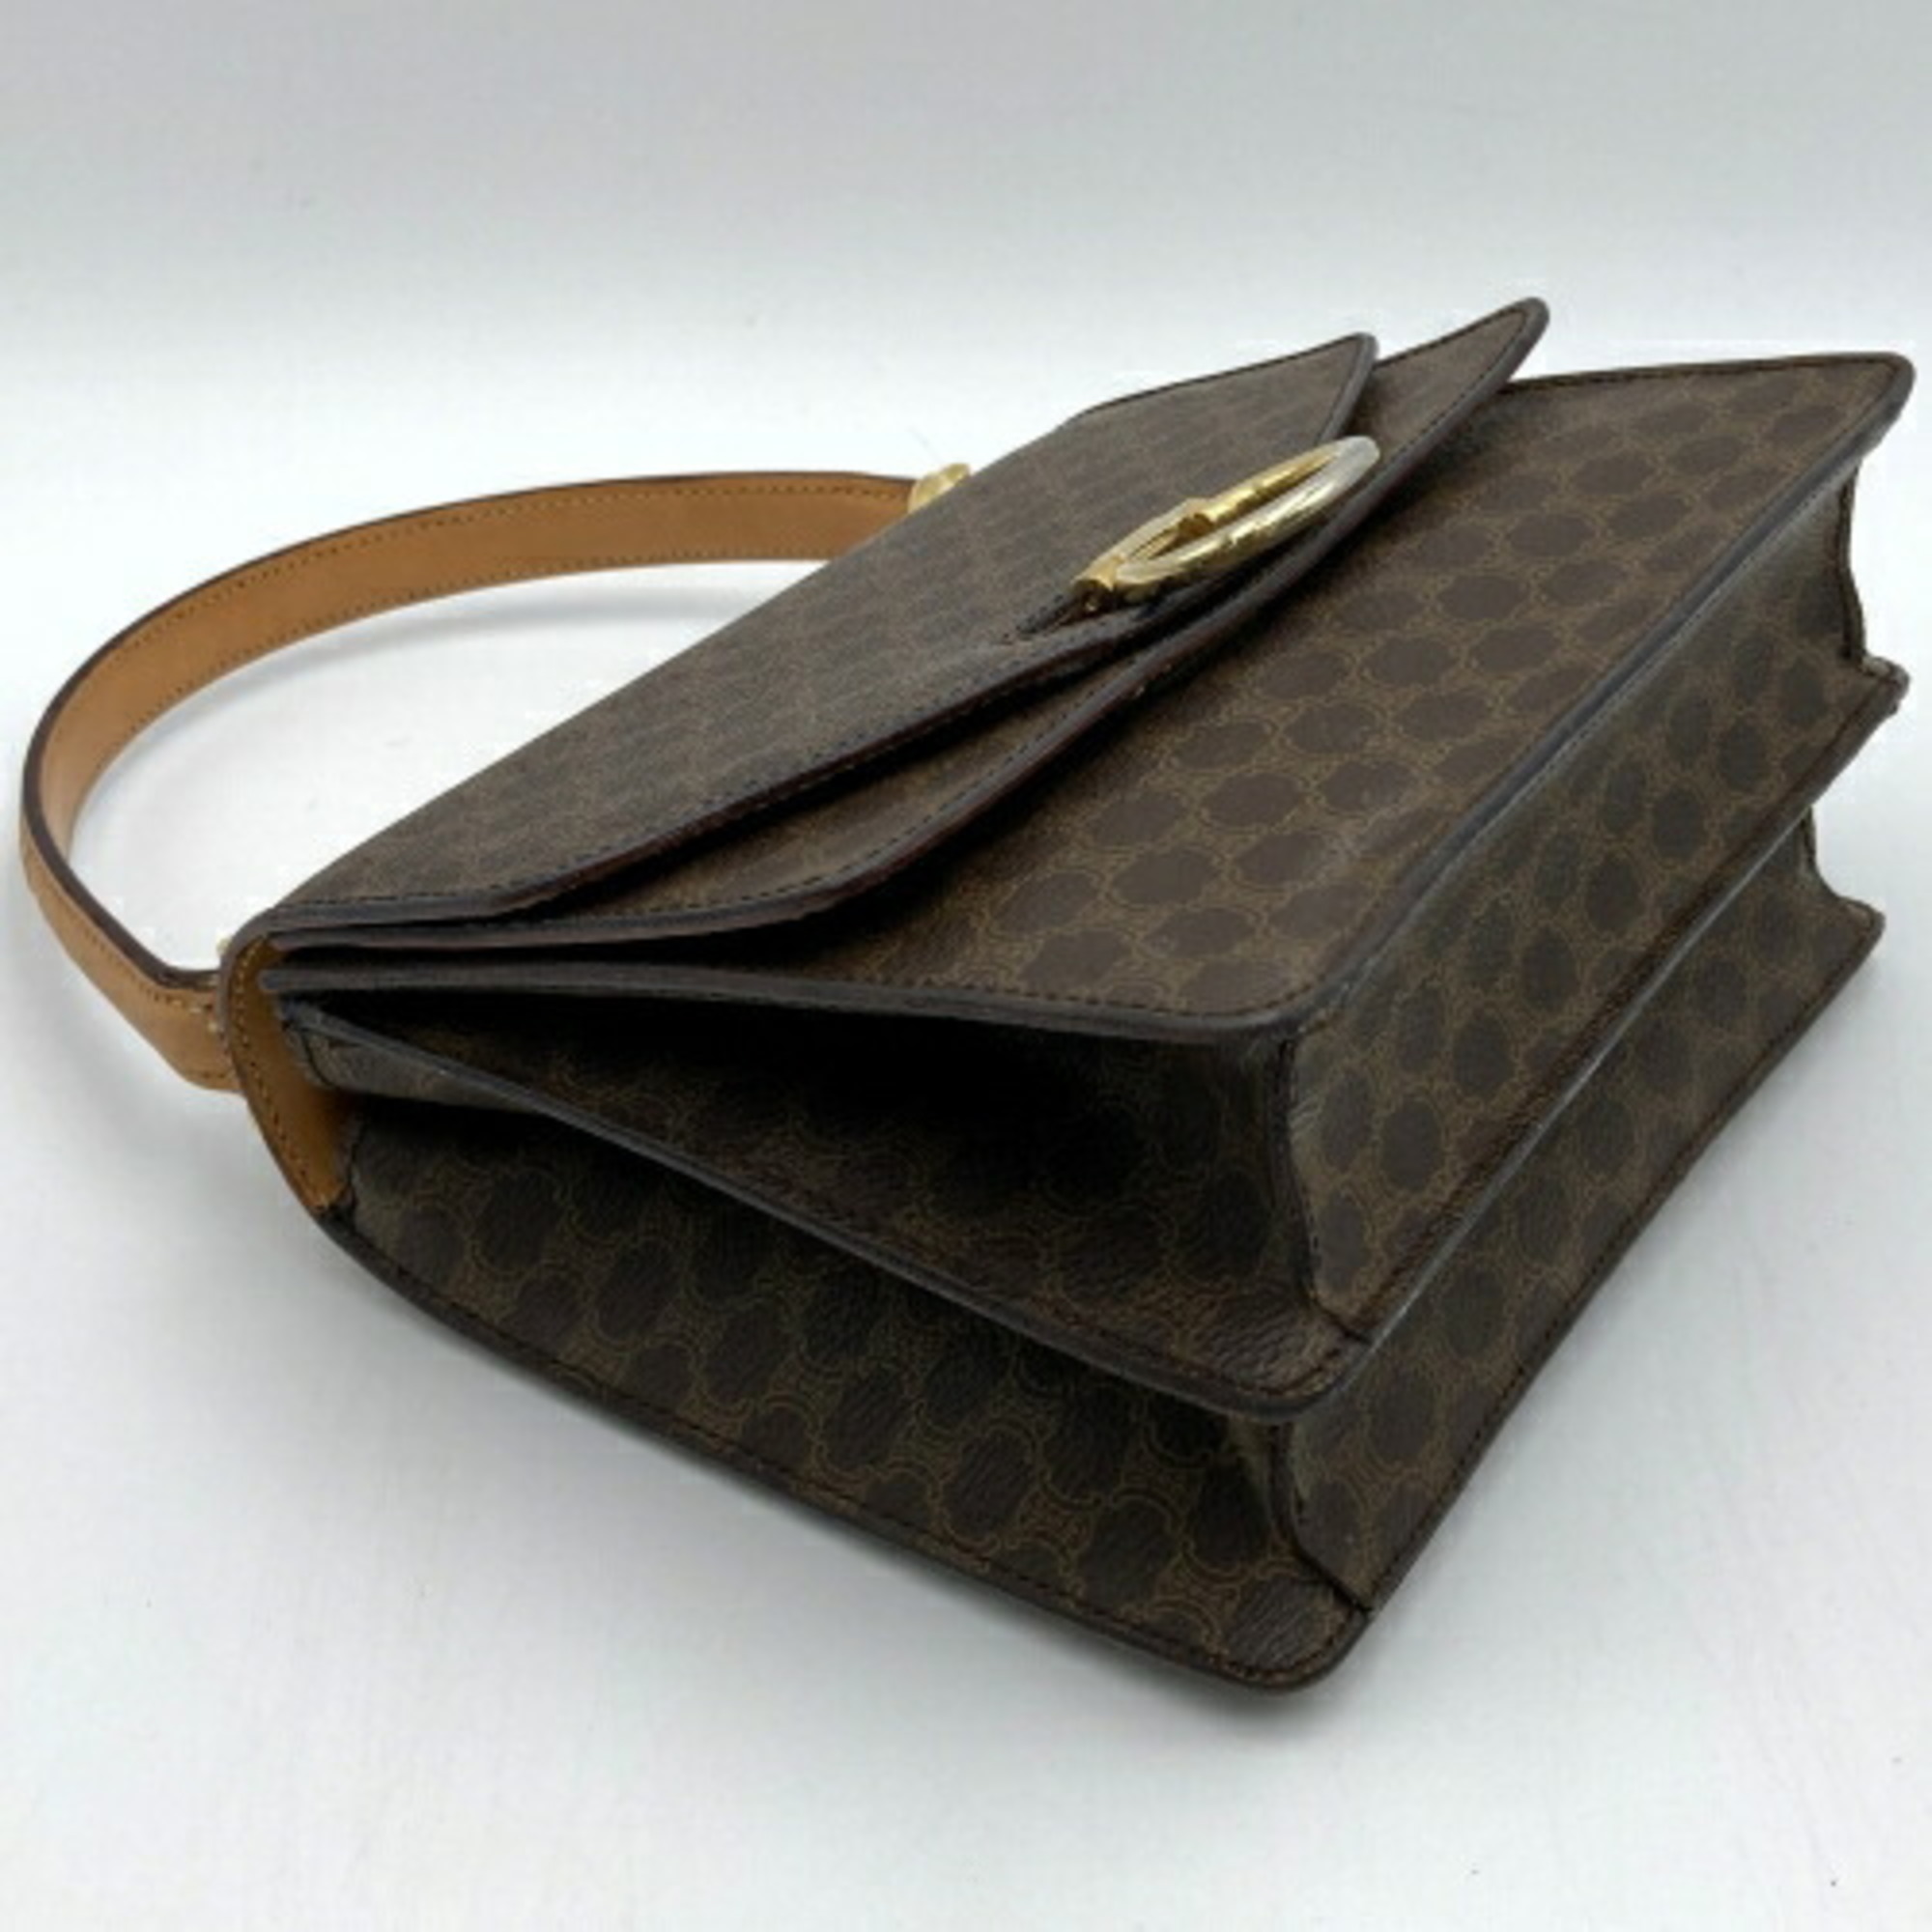 CELINE Macadam handbag handheld bag brown ladies fashion PVC F 01 USED